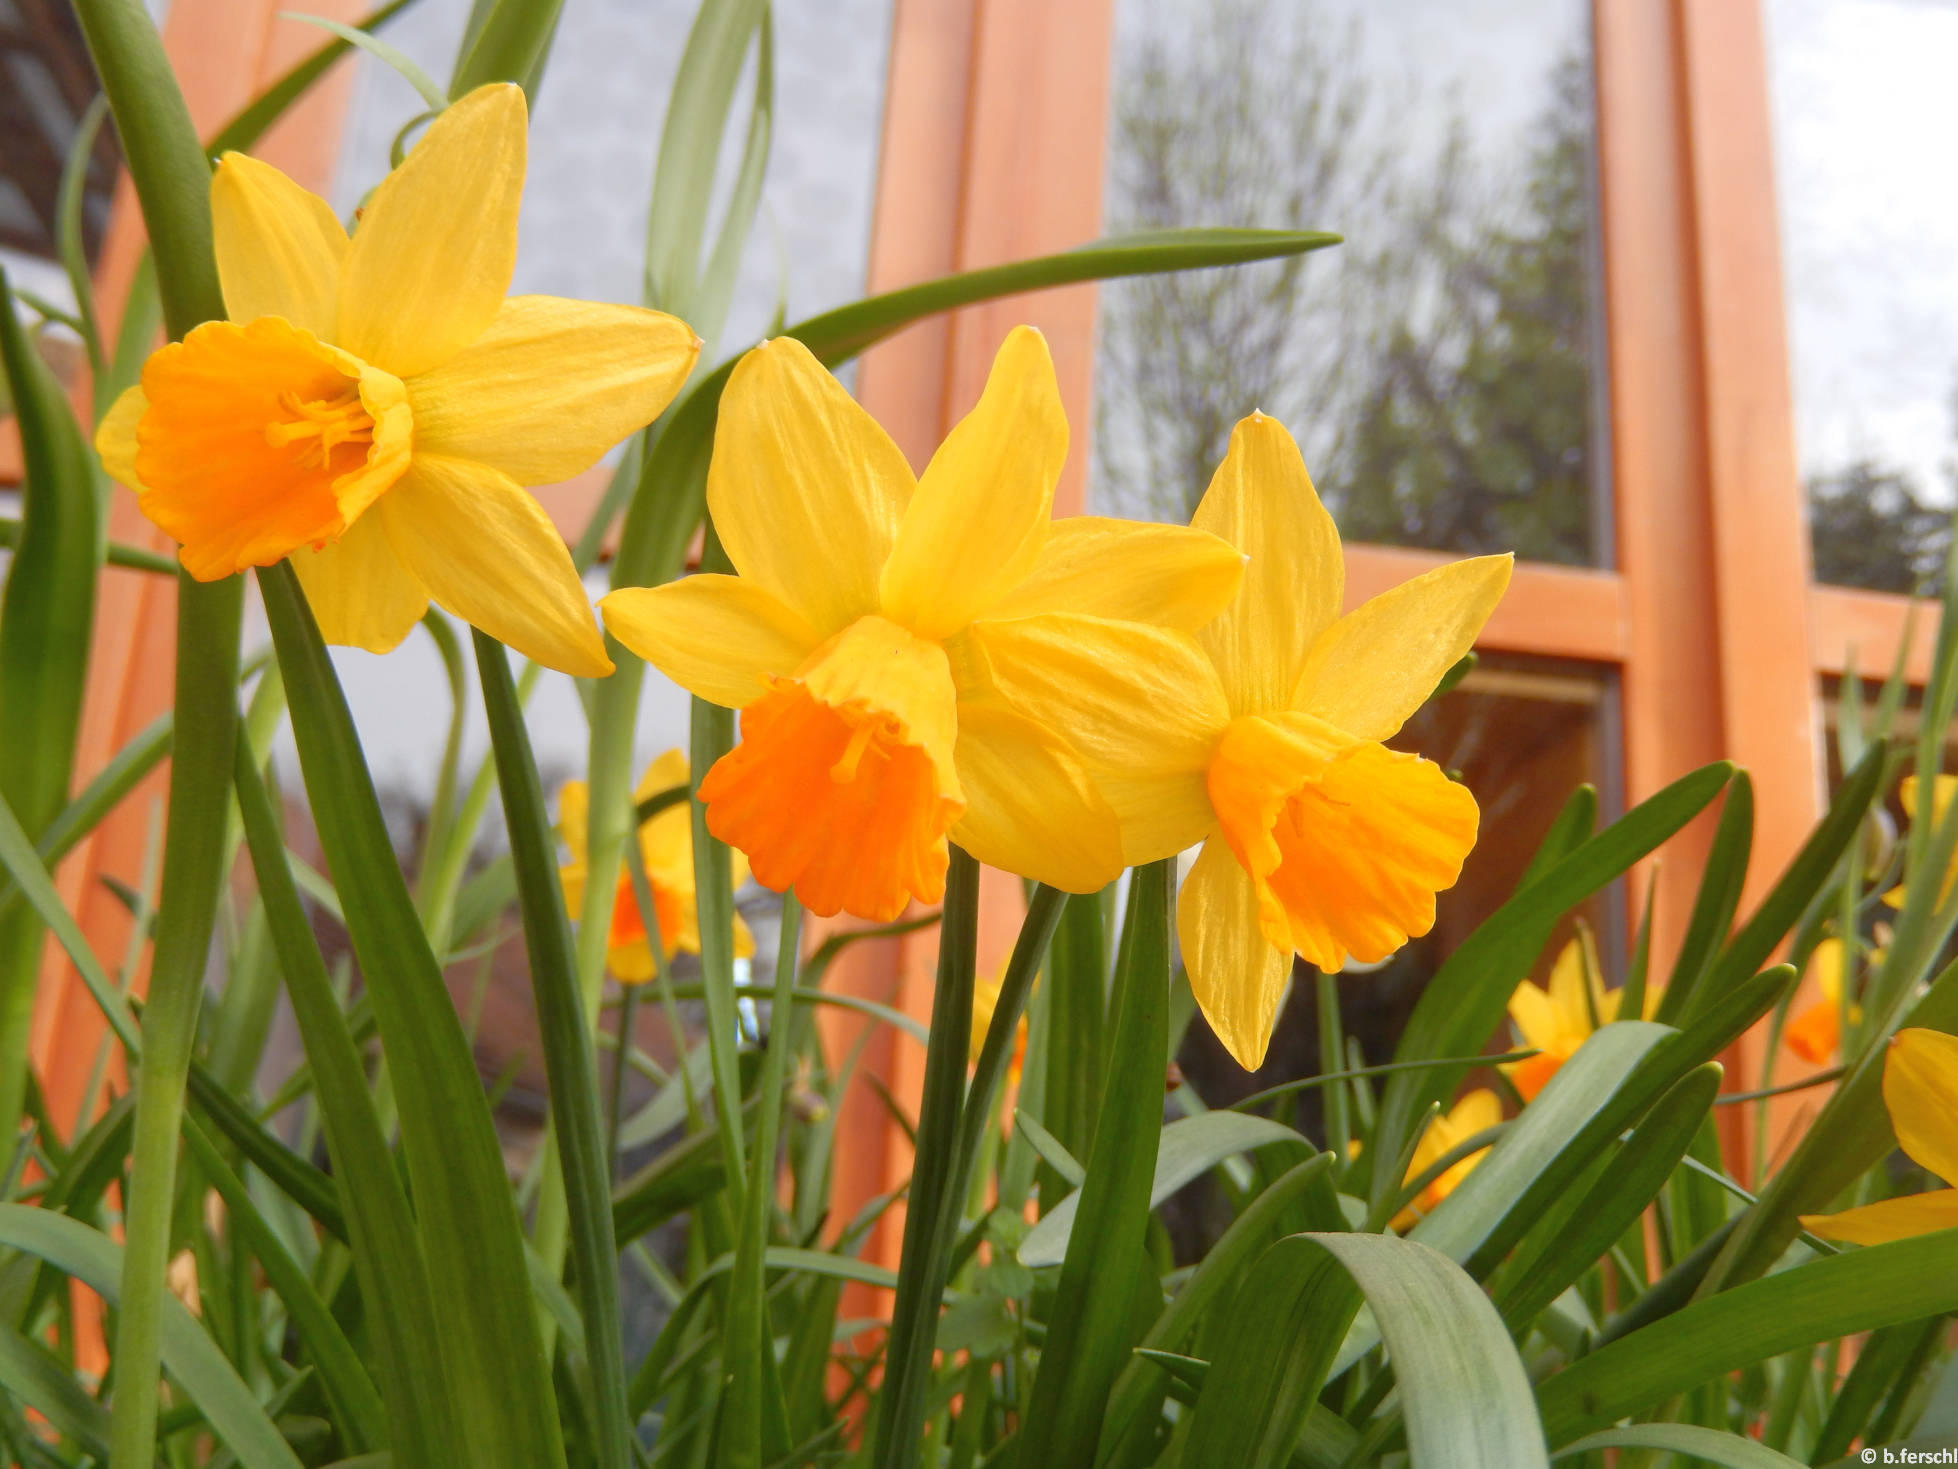 Bókoló nárcisz a Berkenyeház előtt (Narcissus cyclamineus ‘Jack Snipe‘